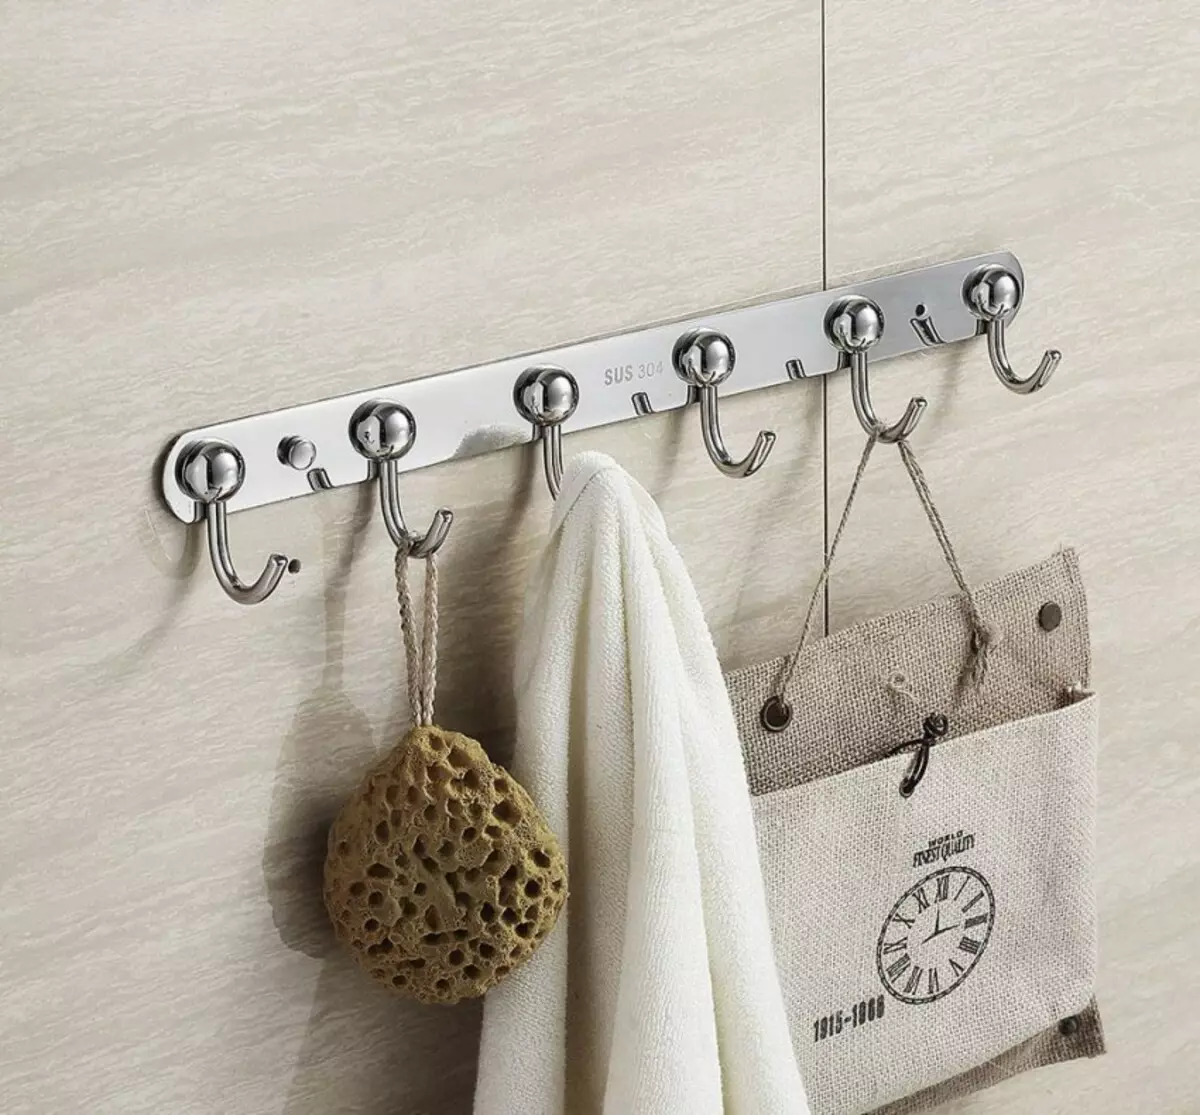 浴室衣架：牆壁滑動浴室衣架，門鉤，地板衣架等 10420_19